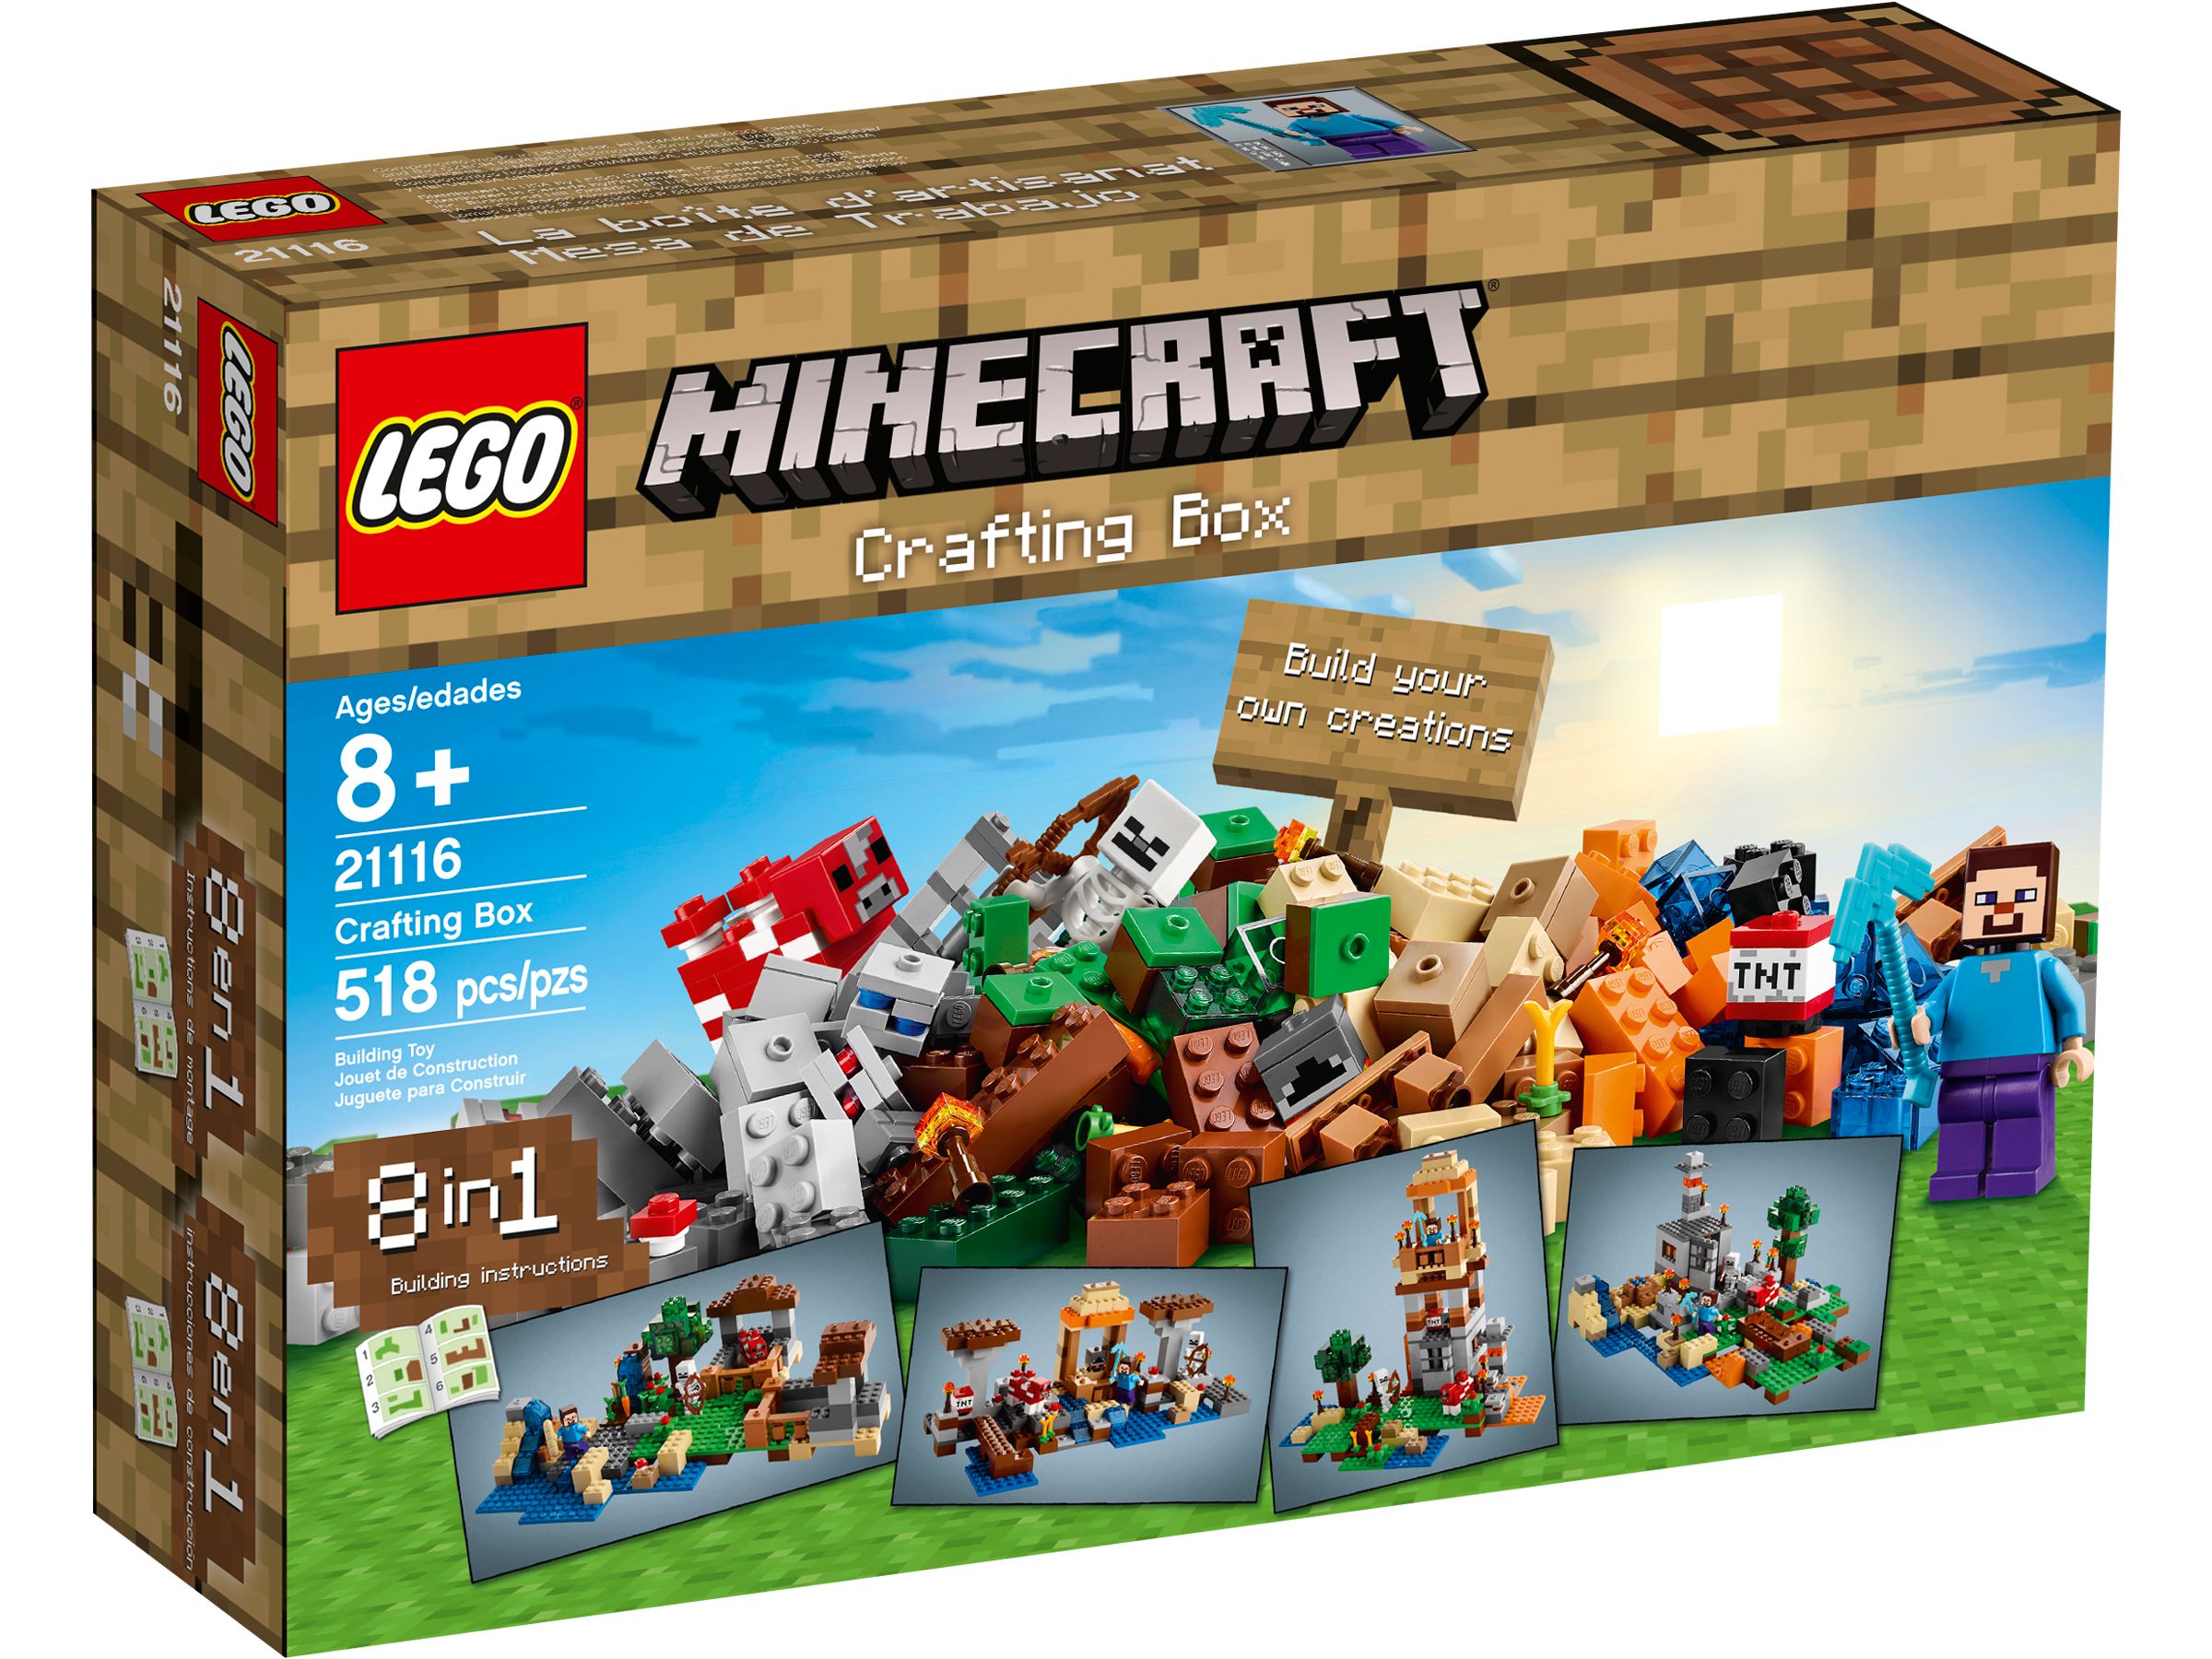 LEGO Minecraft 21116 Crafting-Box LEGO_21116_alt1.jpg